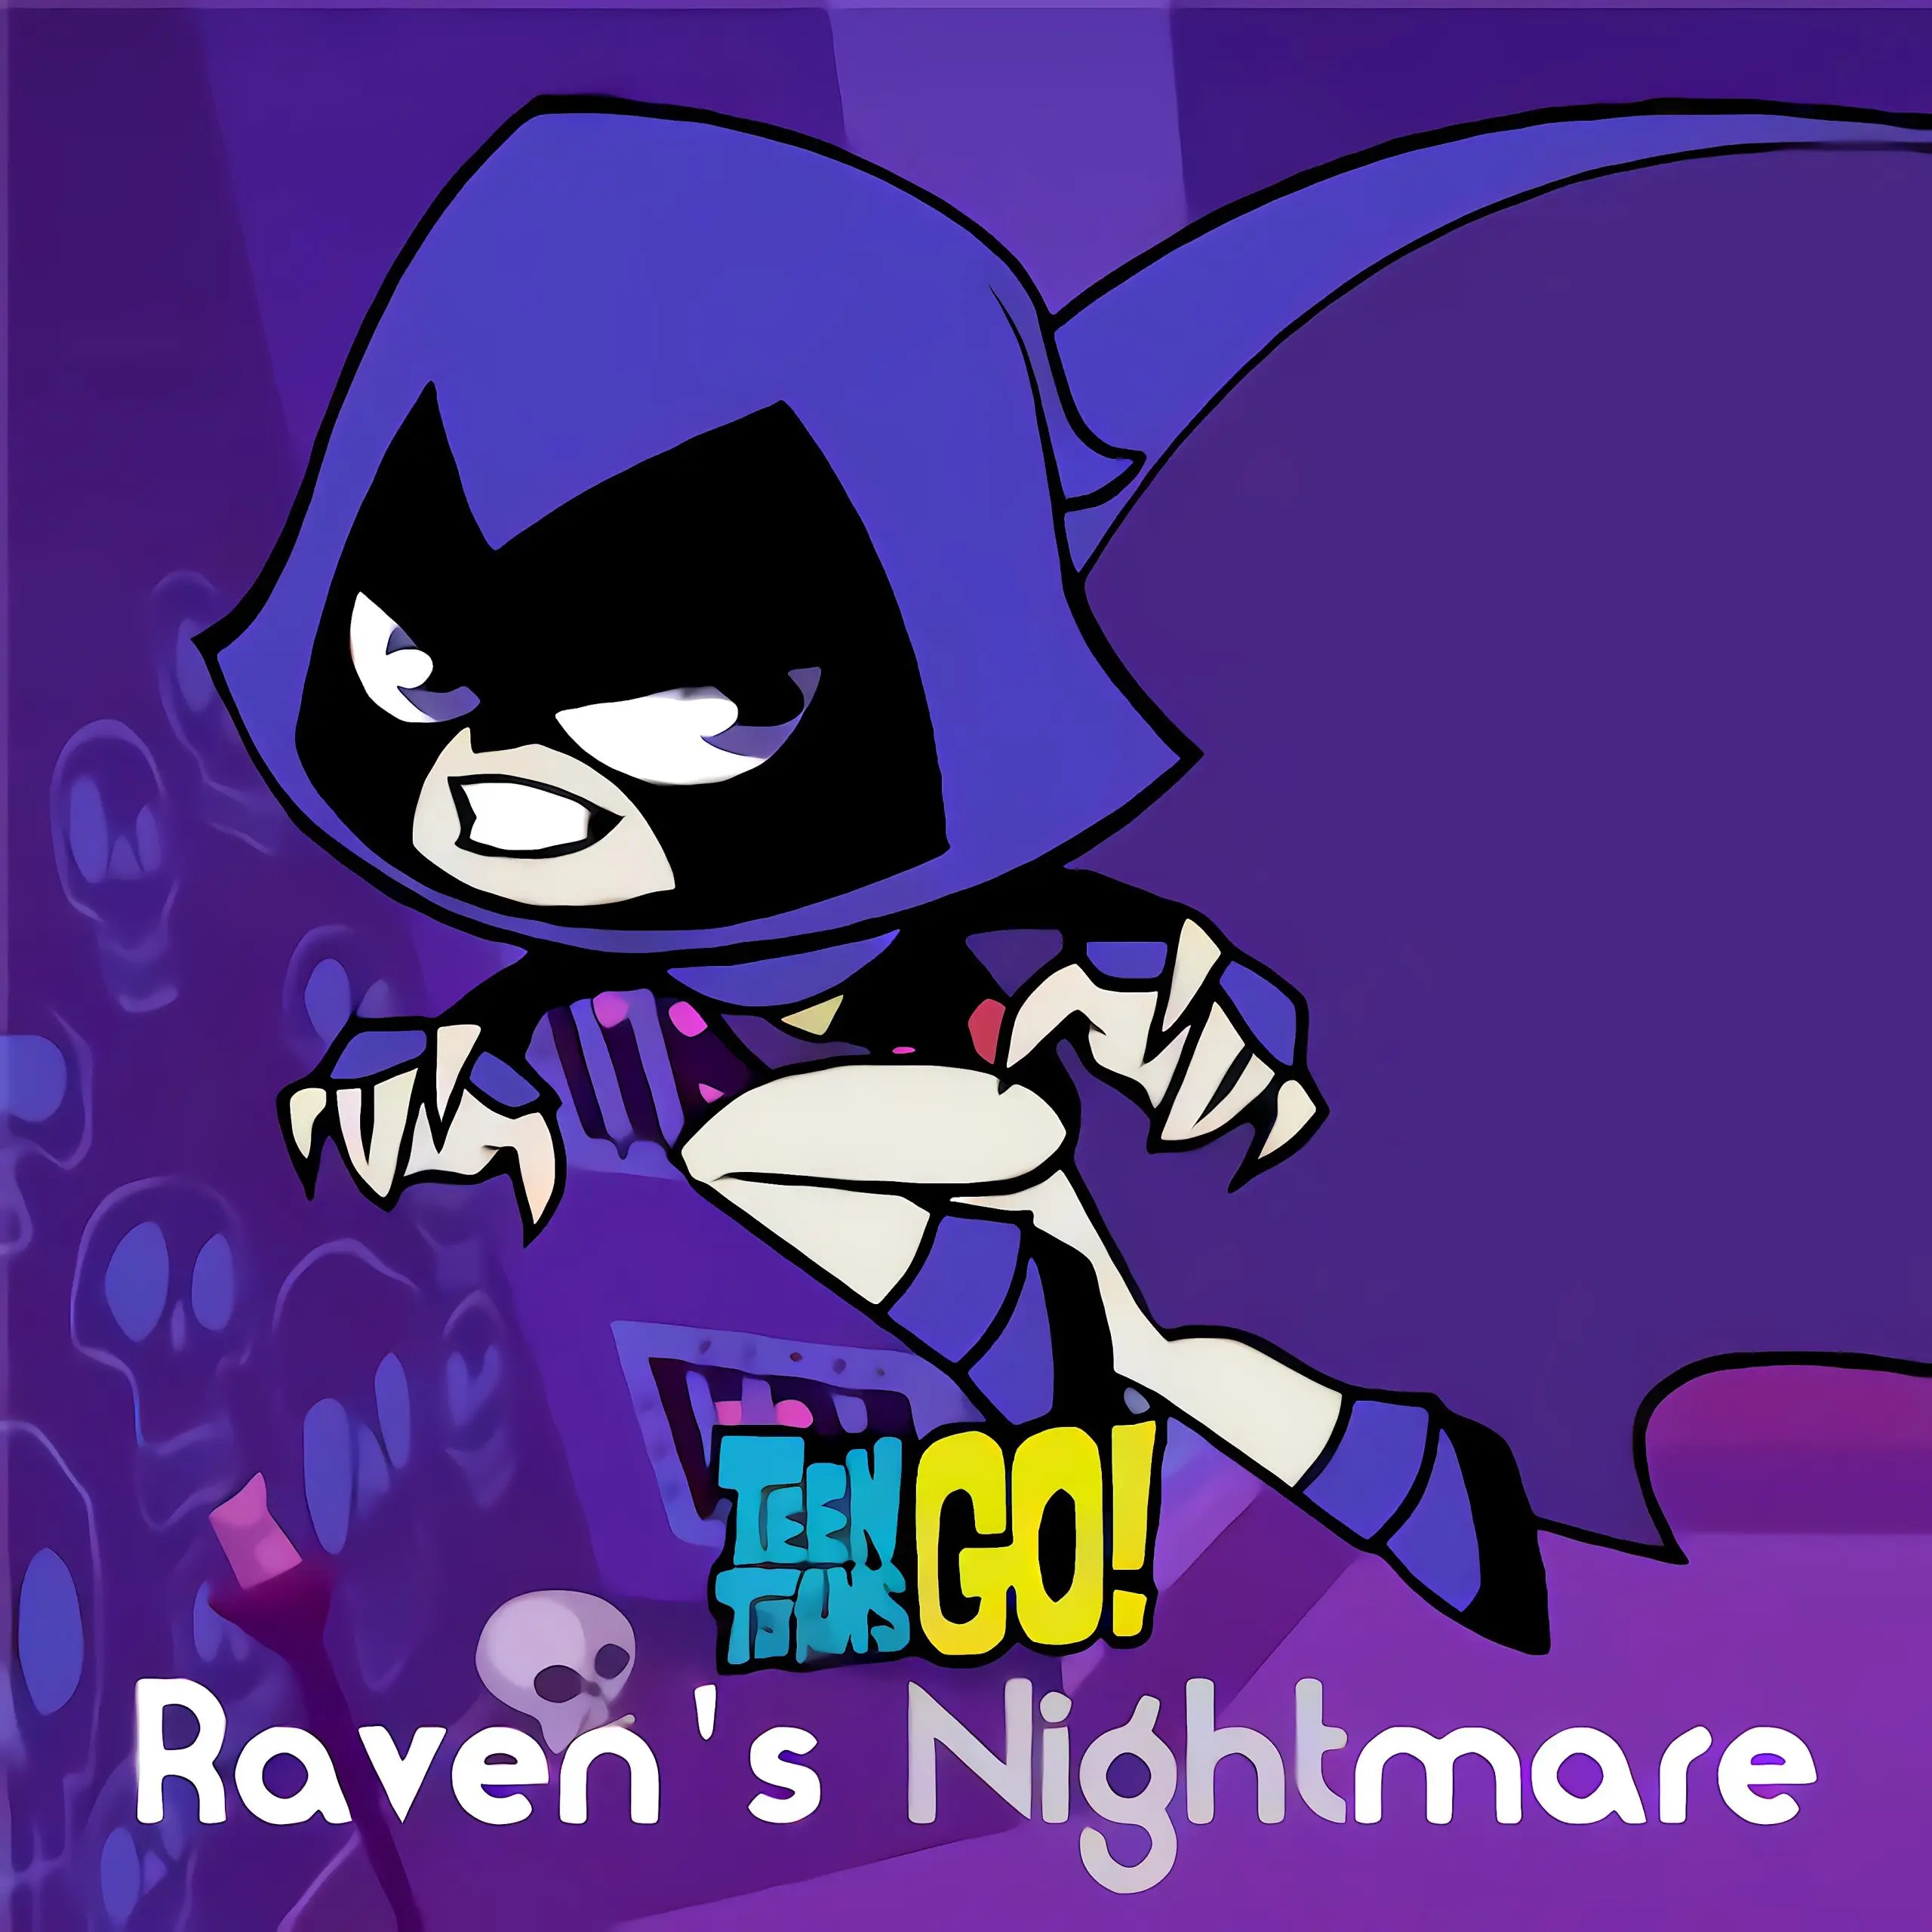 Raven gặp ác mộng